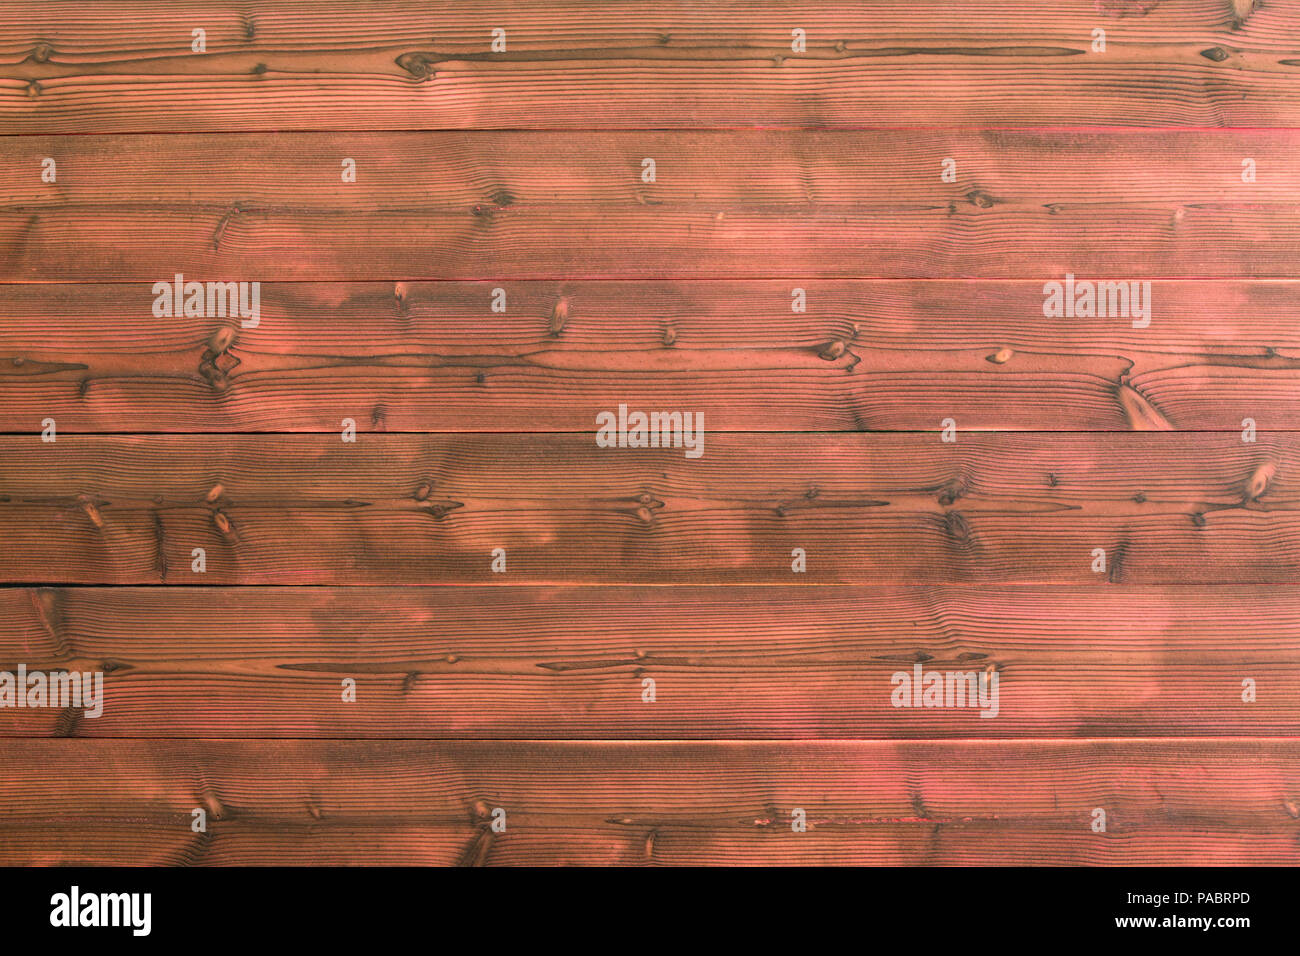 Planche en bois rouge wall background avec noeuds visibles en bois et des marques noires le long du grain. Copie comprend l'espace. Banque D'Images